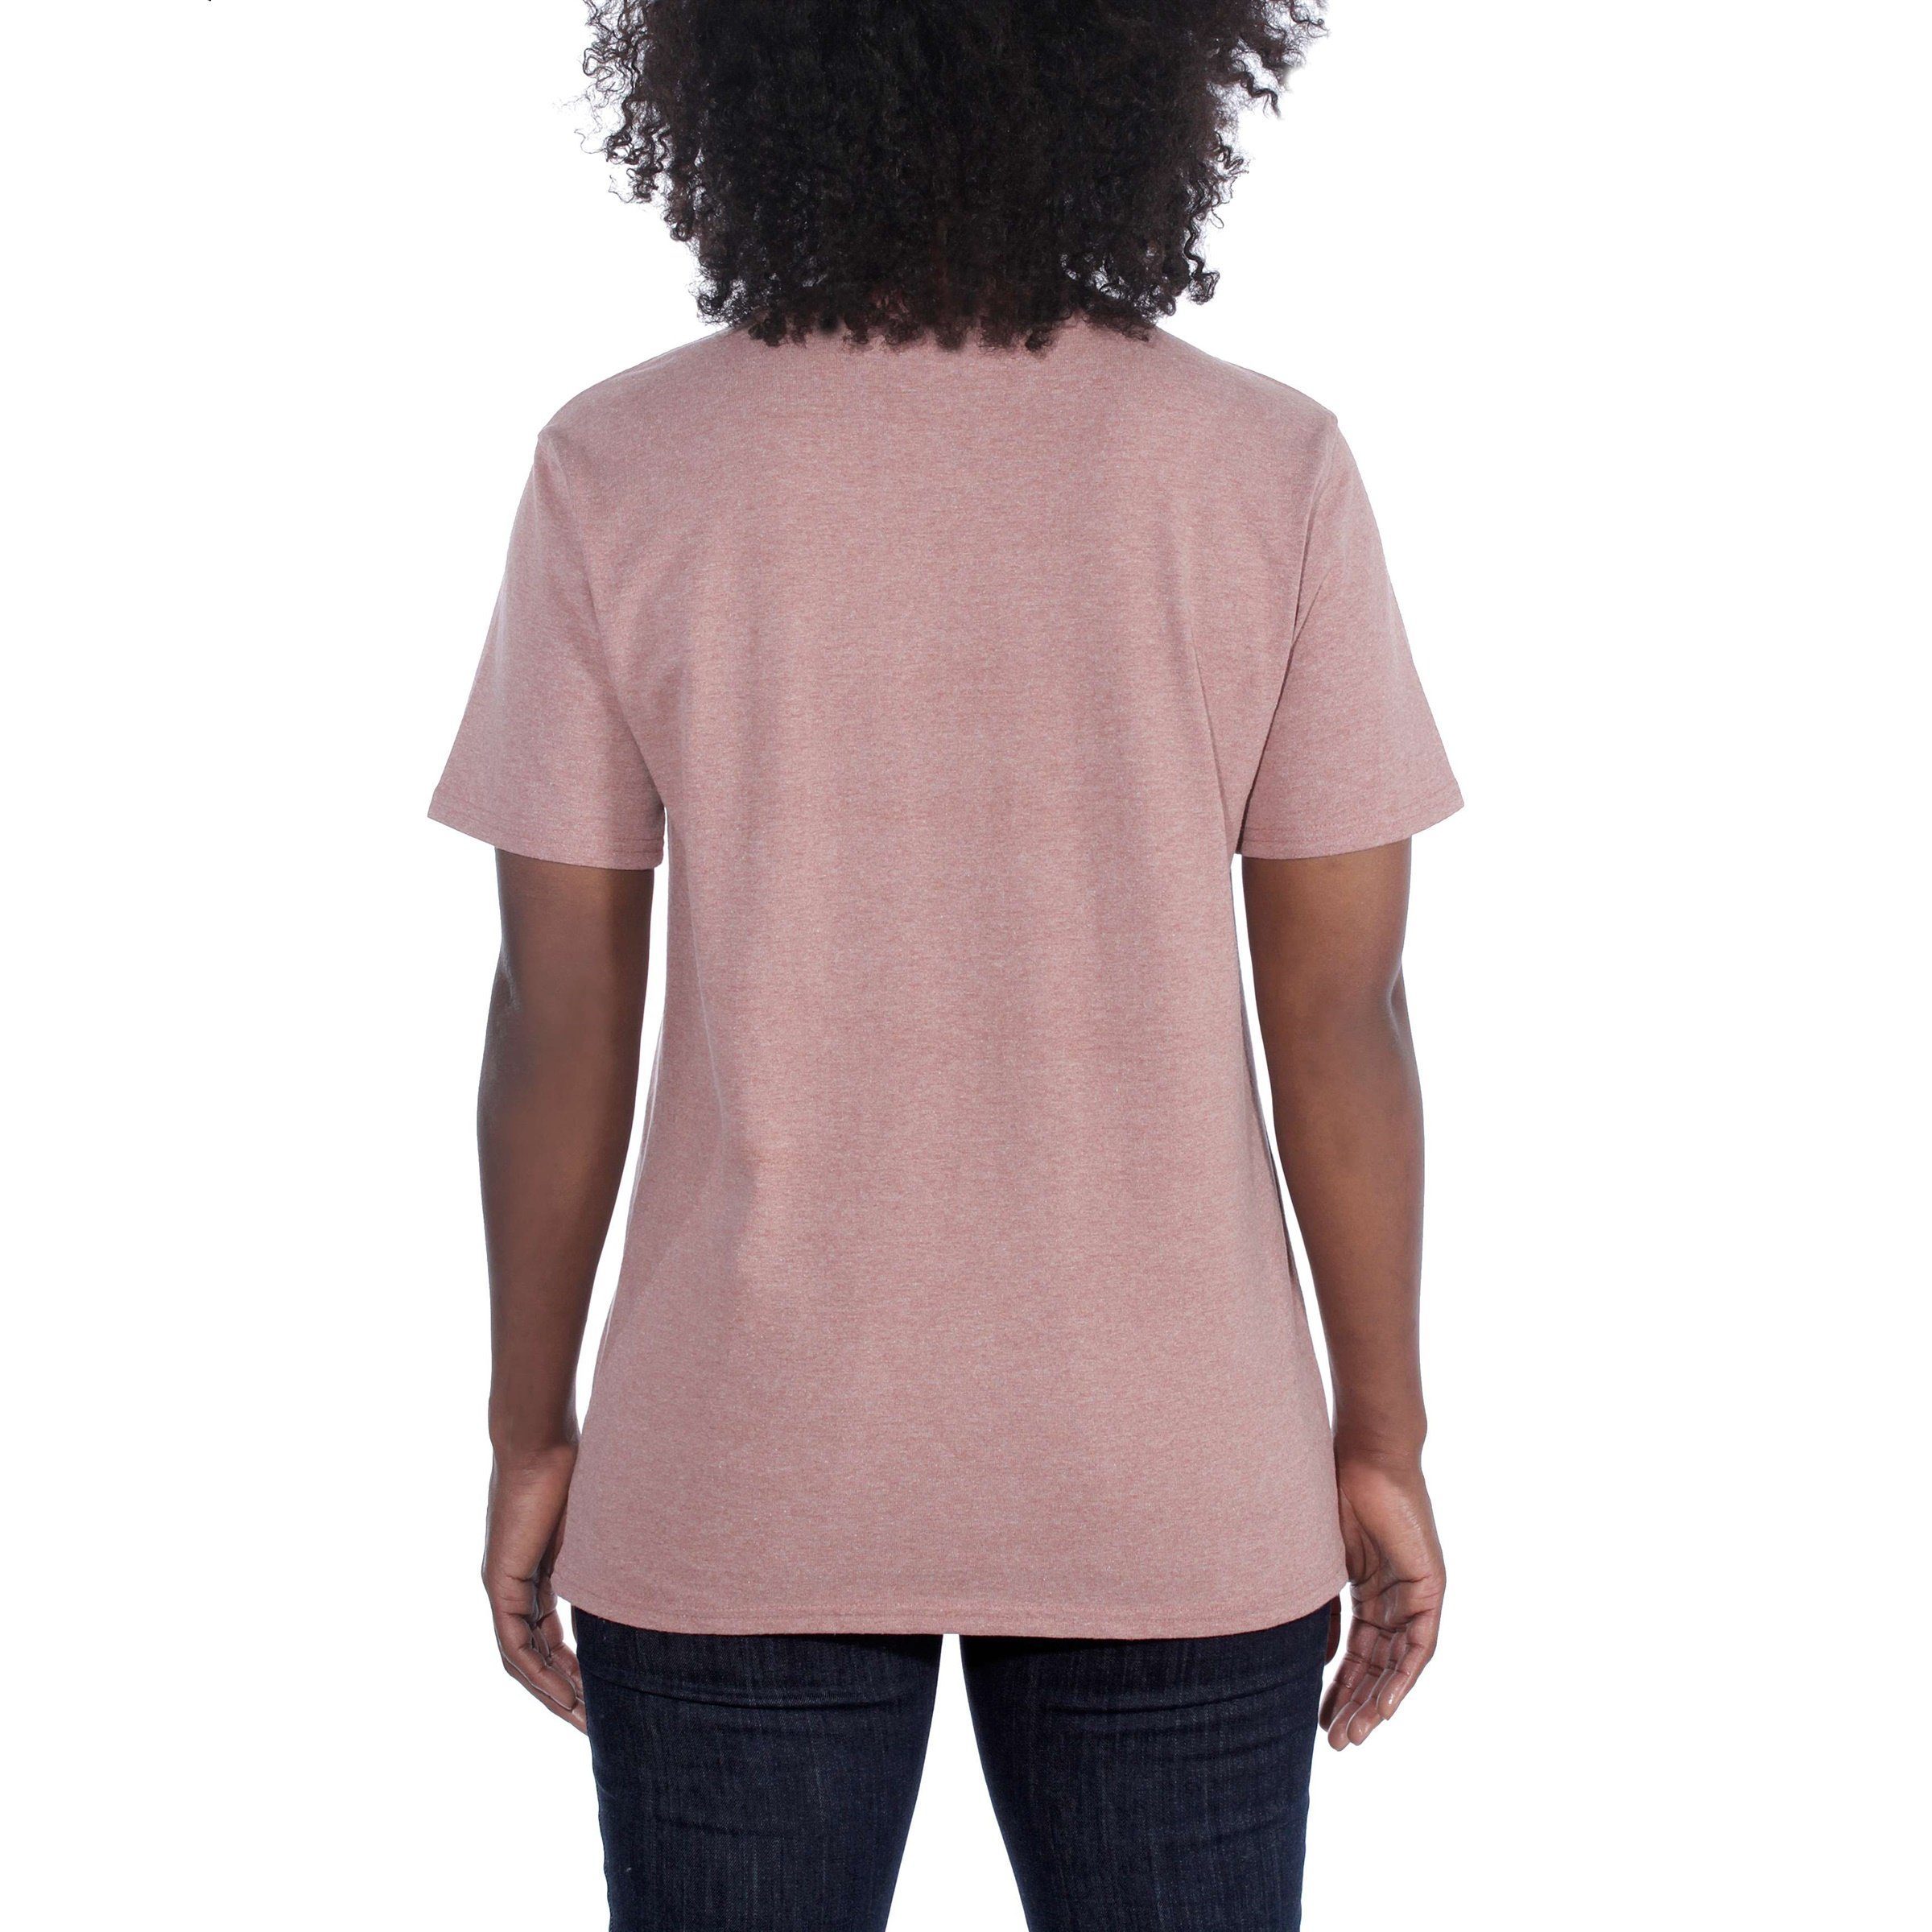 Damen Fit sun Carhartt pale Heavyweight T-Shirt Carhartt Pocket Loose T-Shirt Adult Short-Sleeve